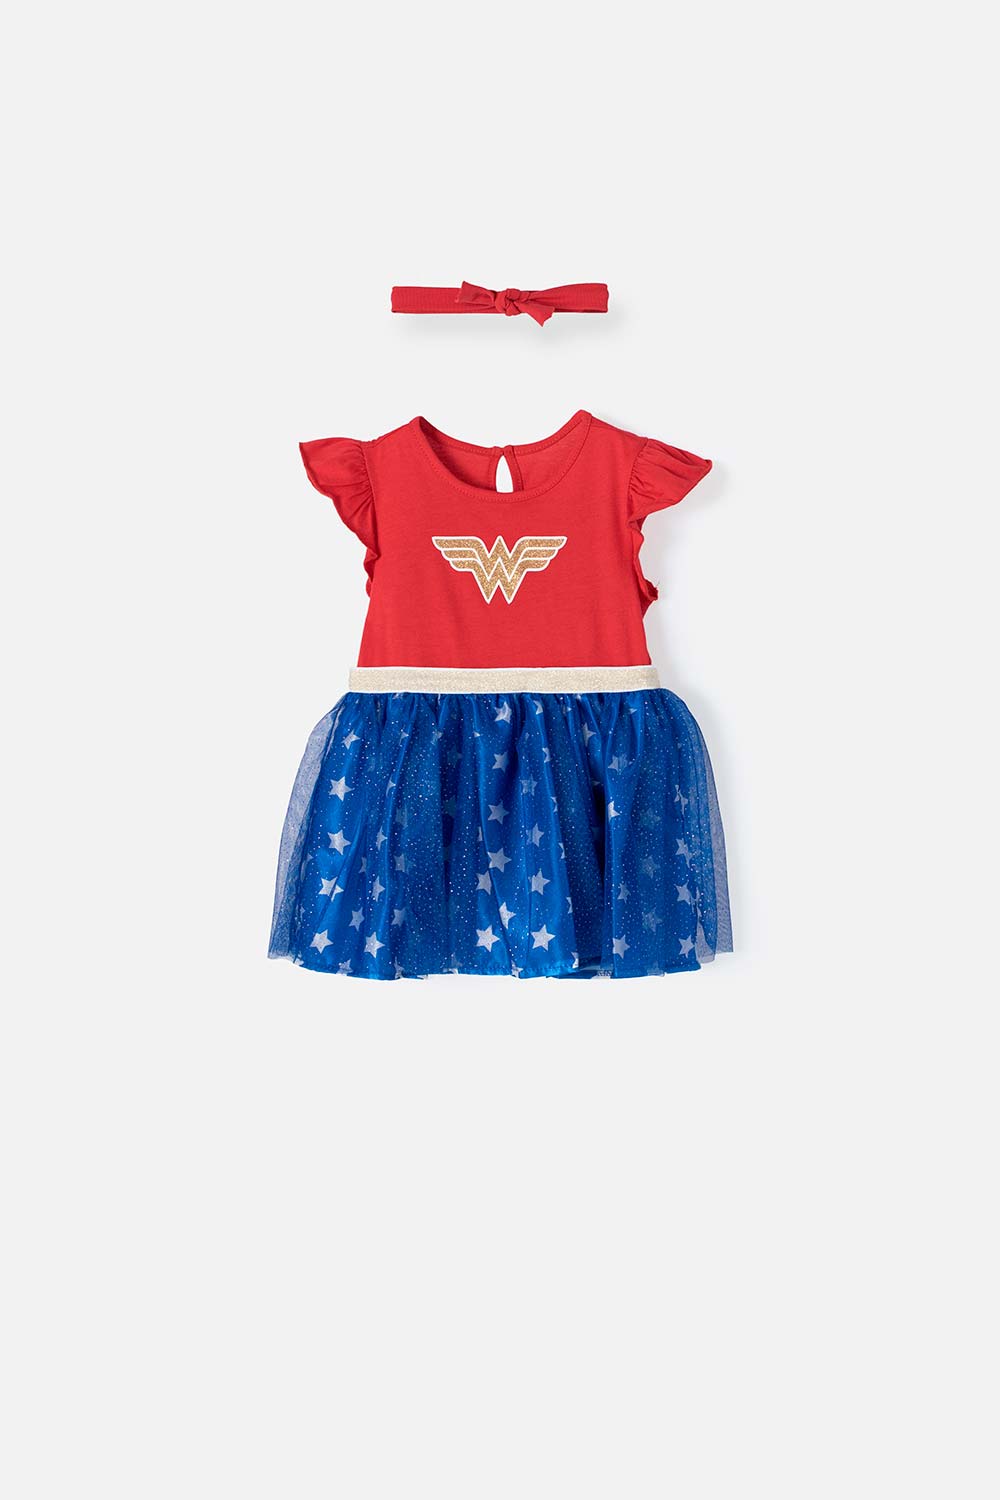 Vestido tutú rojo de Wonder Woman para bebé niña 6-9-0